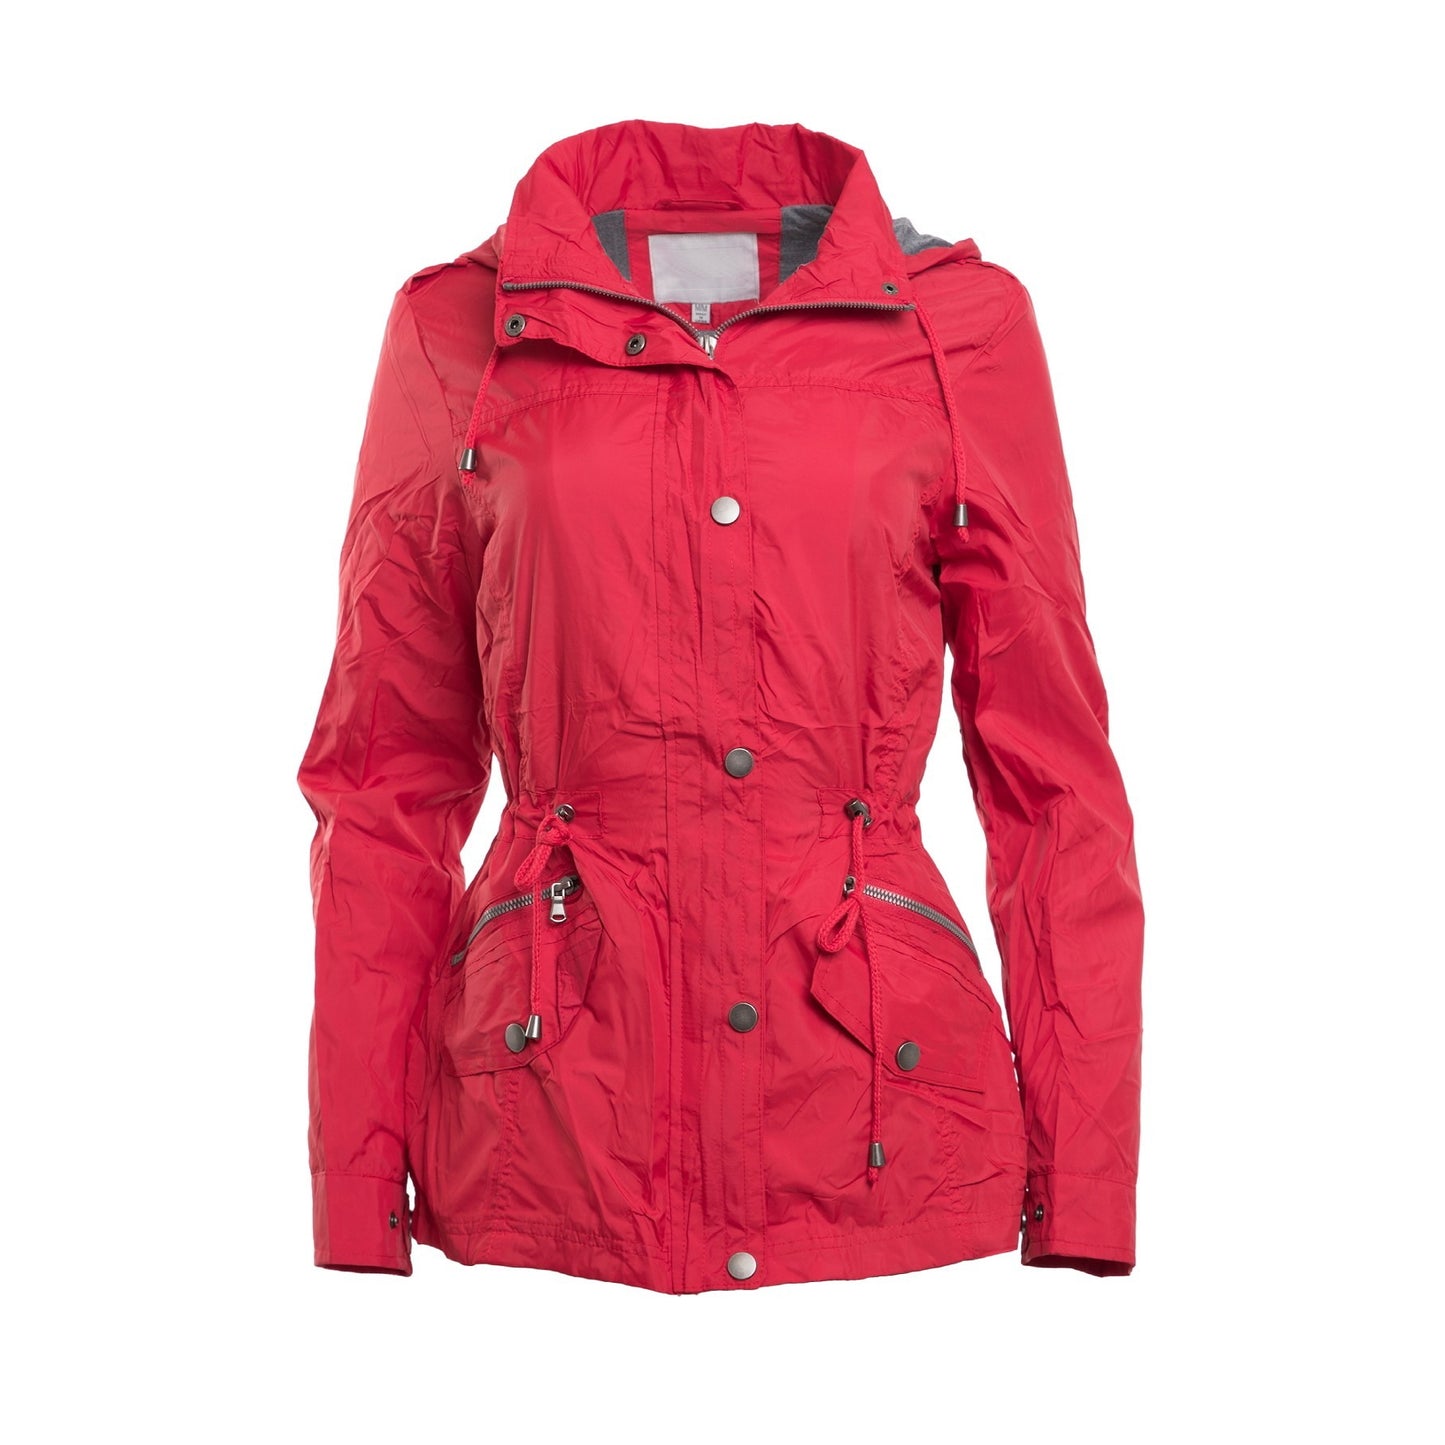 Carolina Girl Lined Windbreaker Jacket in Red